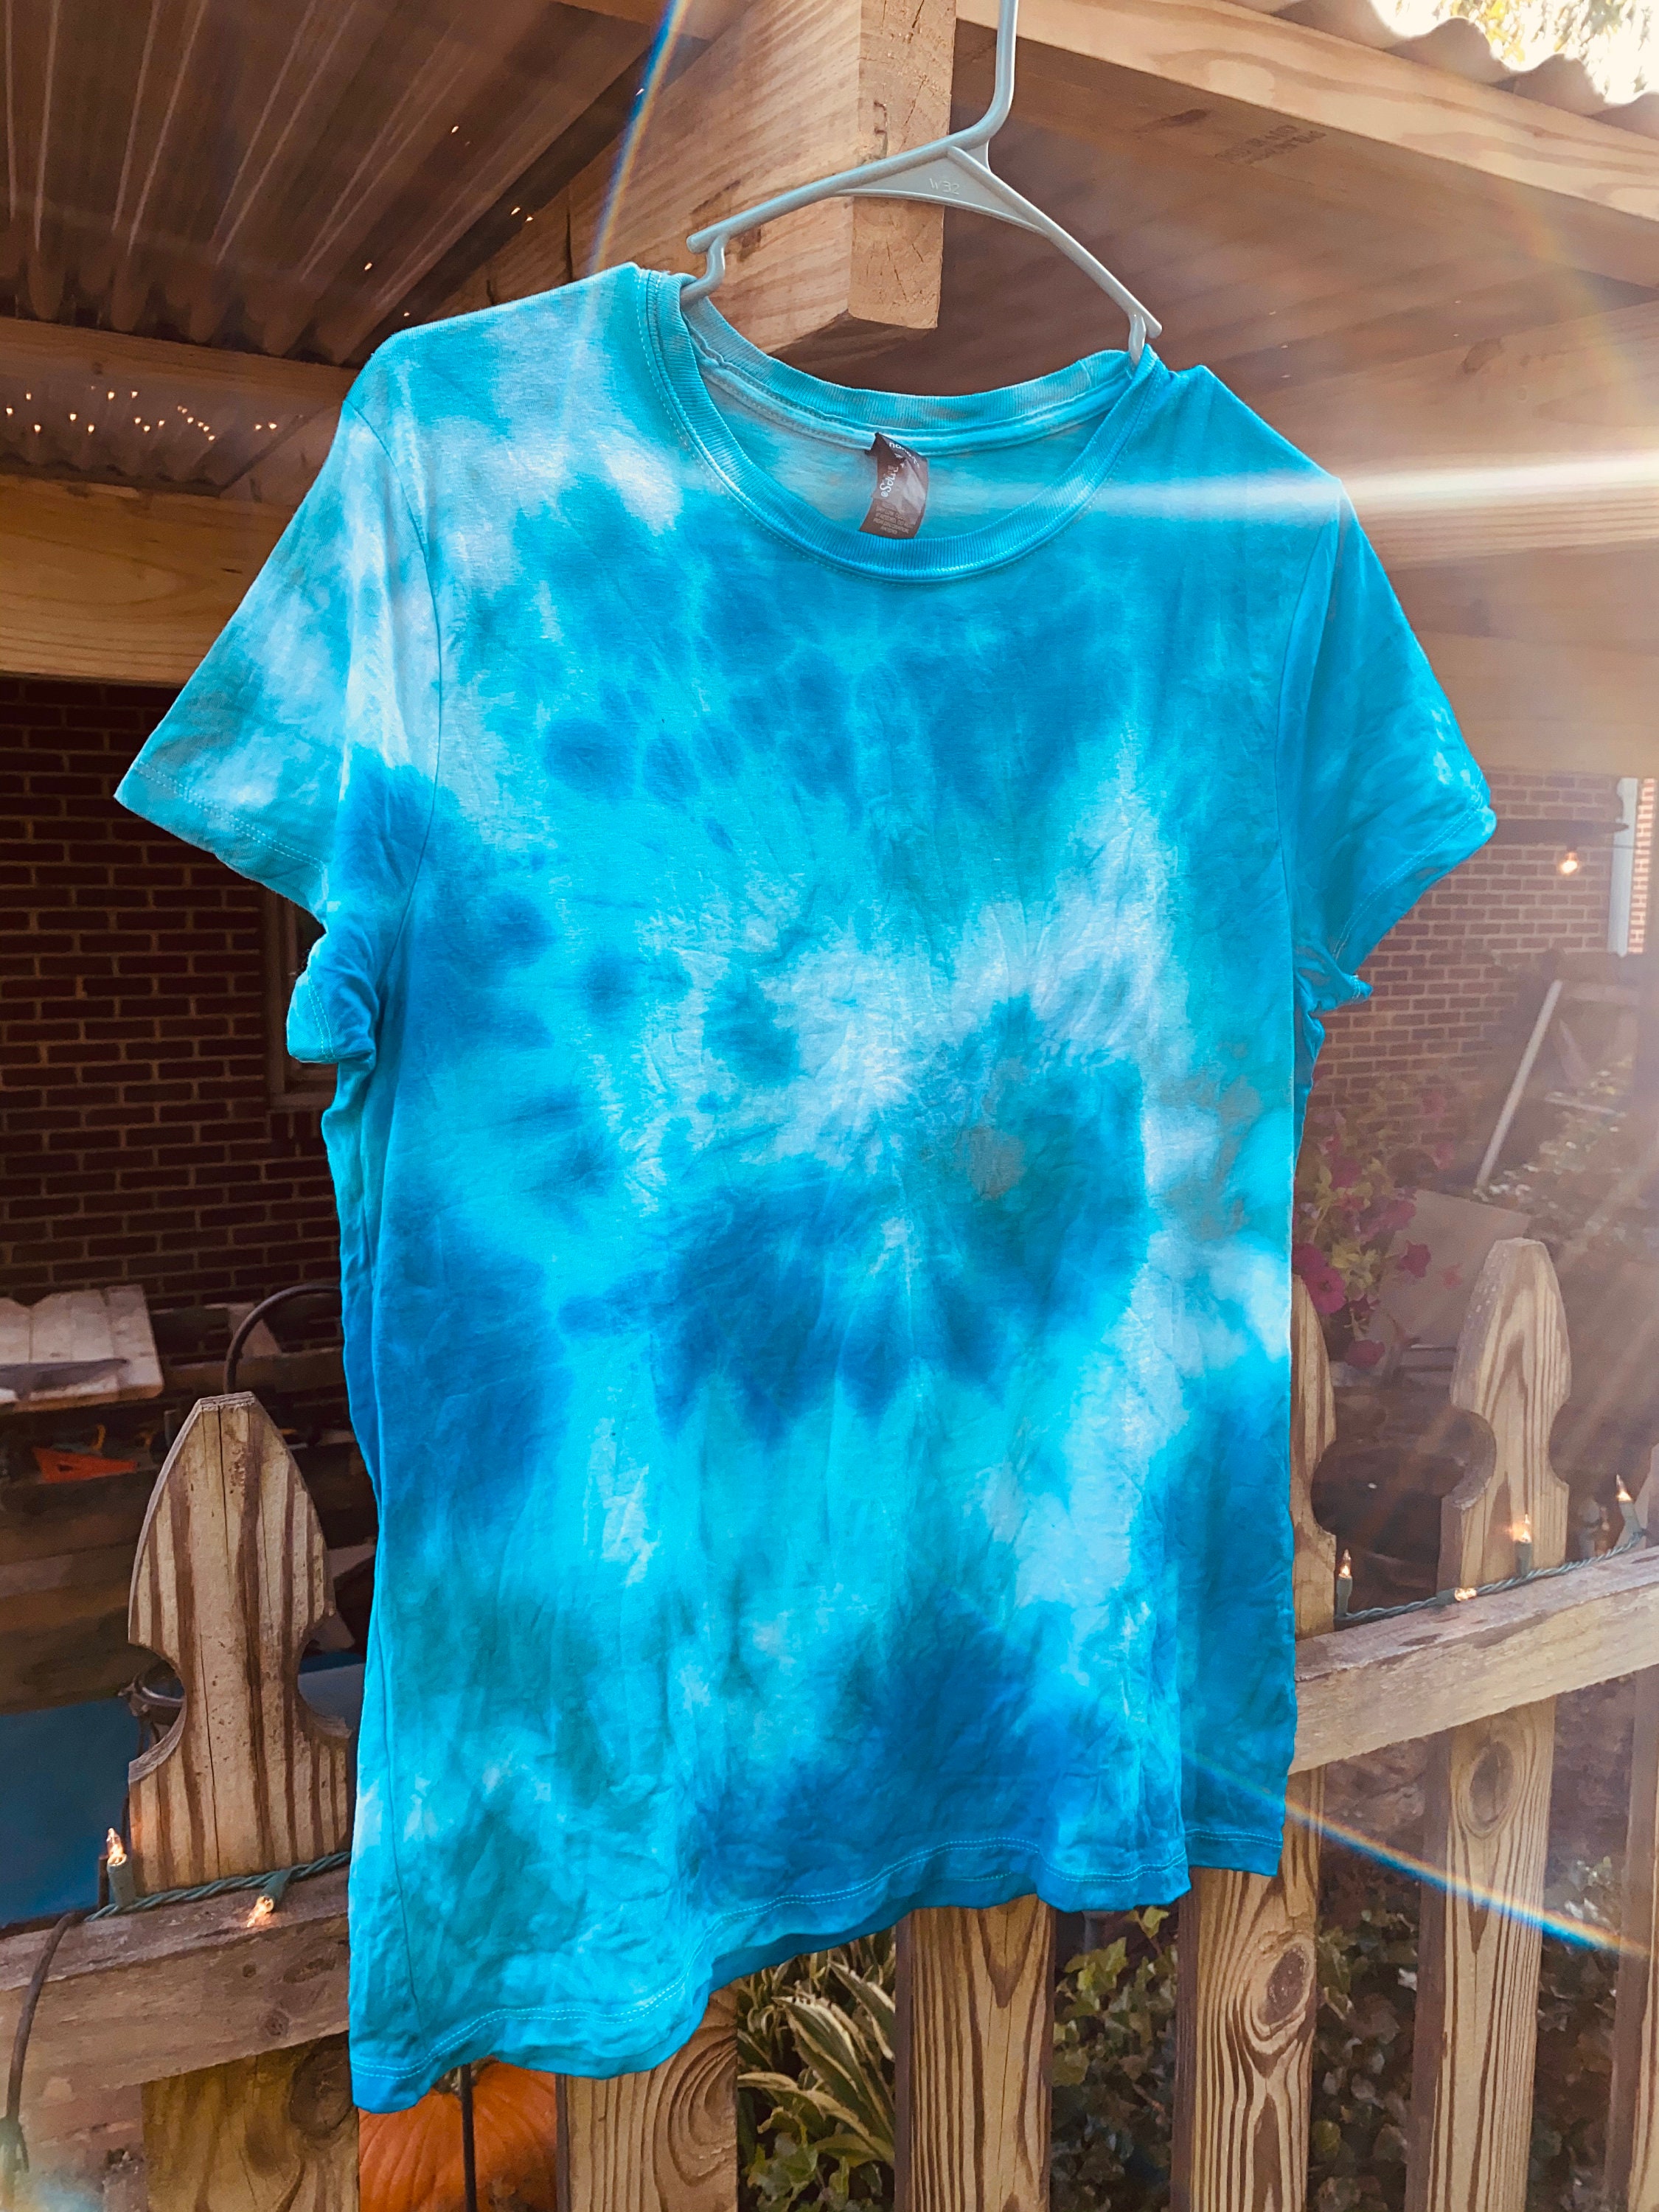 Blue Tye Dye Shirt | Etsy